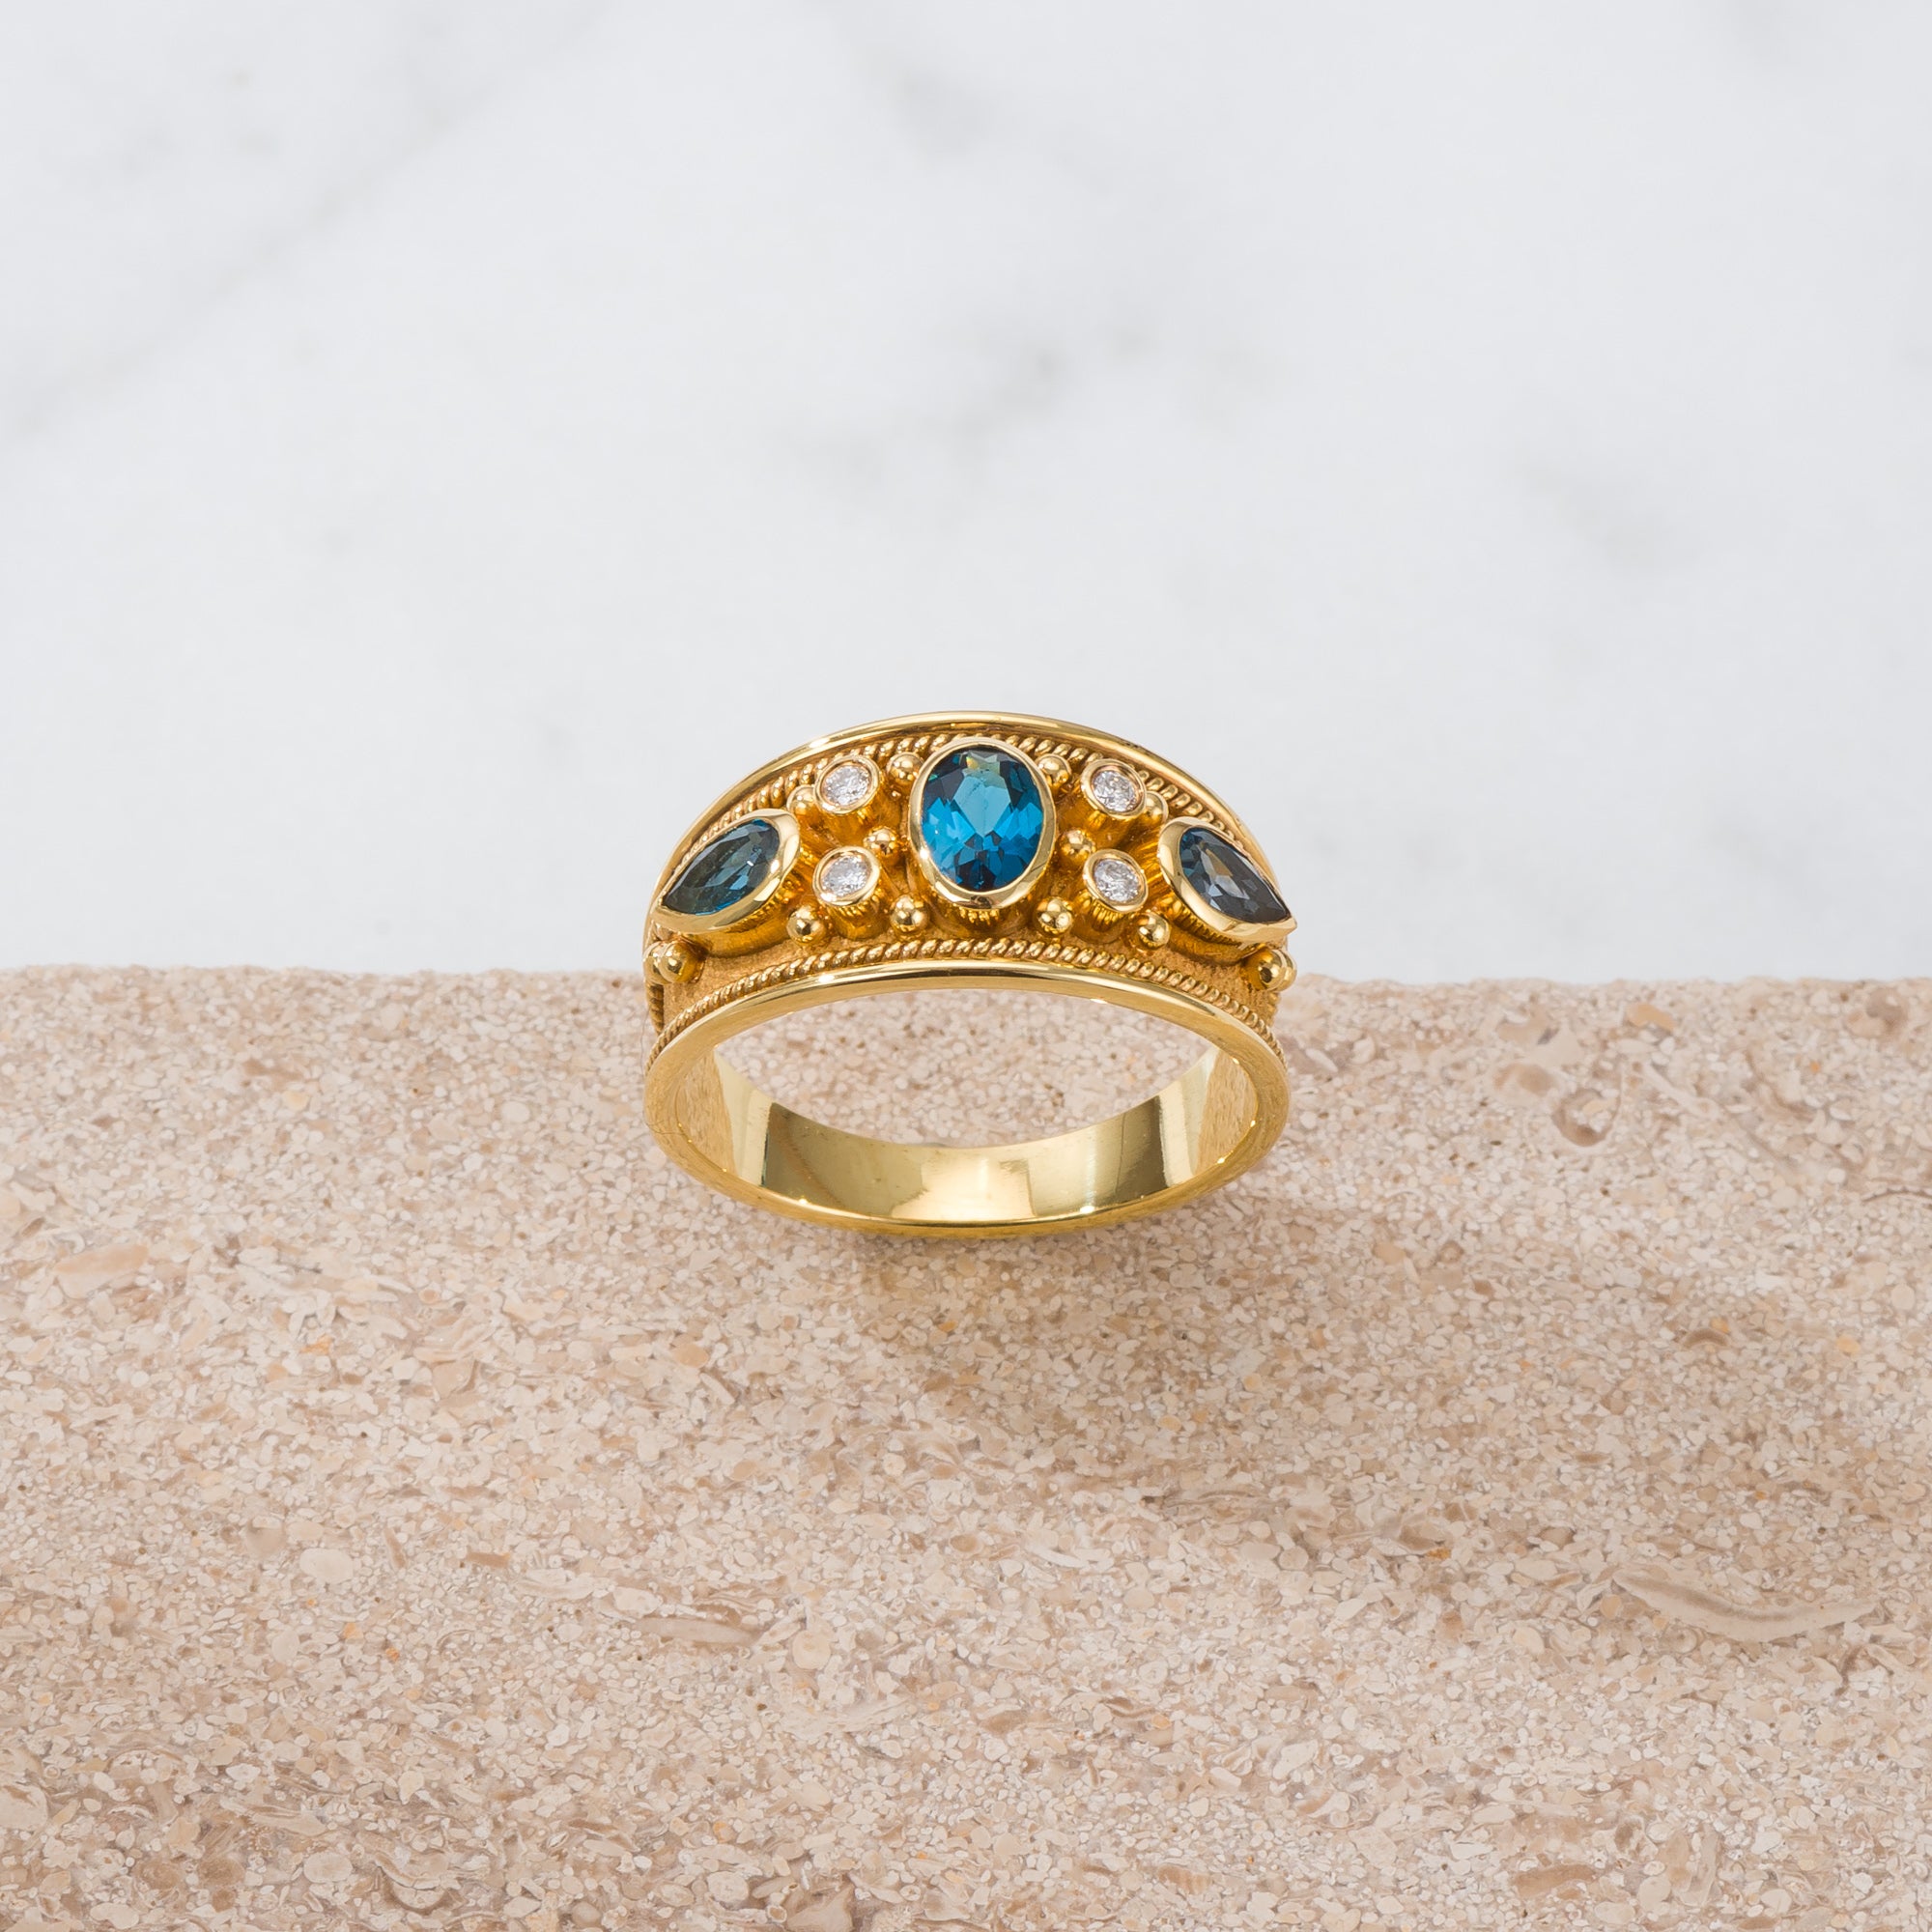 London Topaz Gold Byzantine Ring with Diamonds Odysseus Jewelry